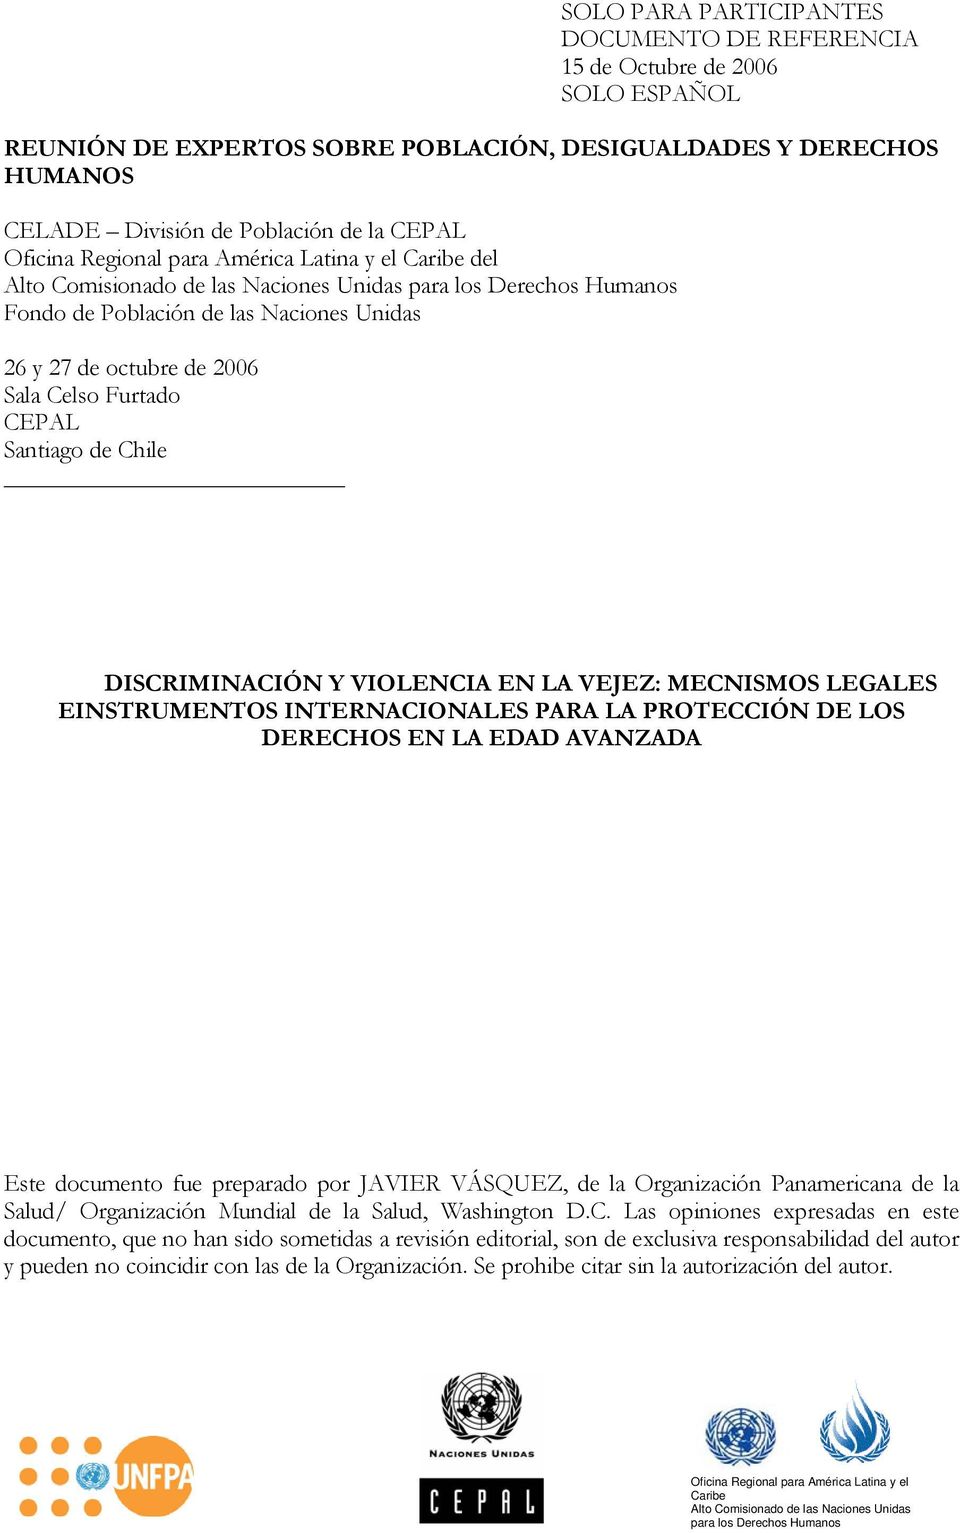 Furtado CEPAL Santiago de Chile DISCRIMINACIÓN Y VIOLENCIA EN LA VEJEZ: MECNISMOS LEGALES EINSTRUMENTOS INTERNACIONALES PARA LA PROTECCIÓN DE LOS DERECHOS EN LA EDAD AVANZADA Este documento fue